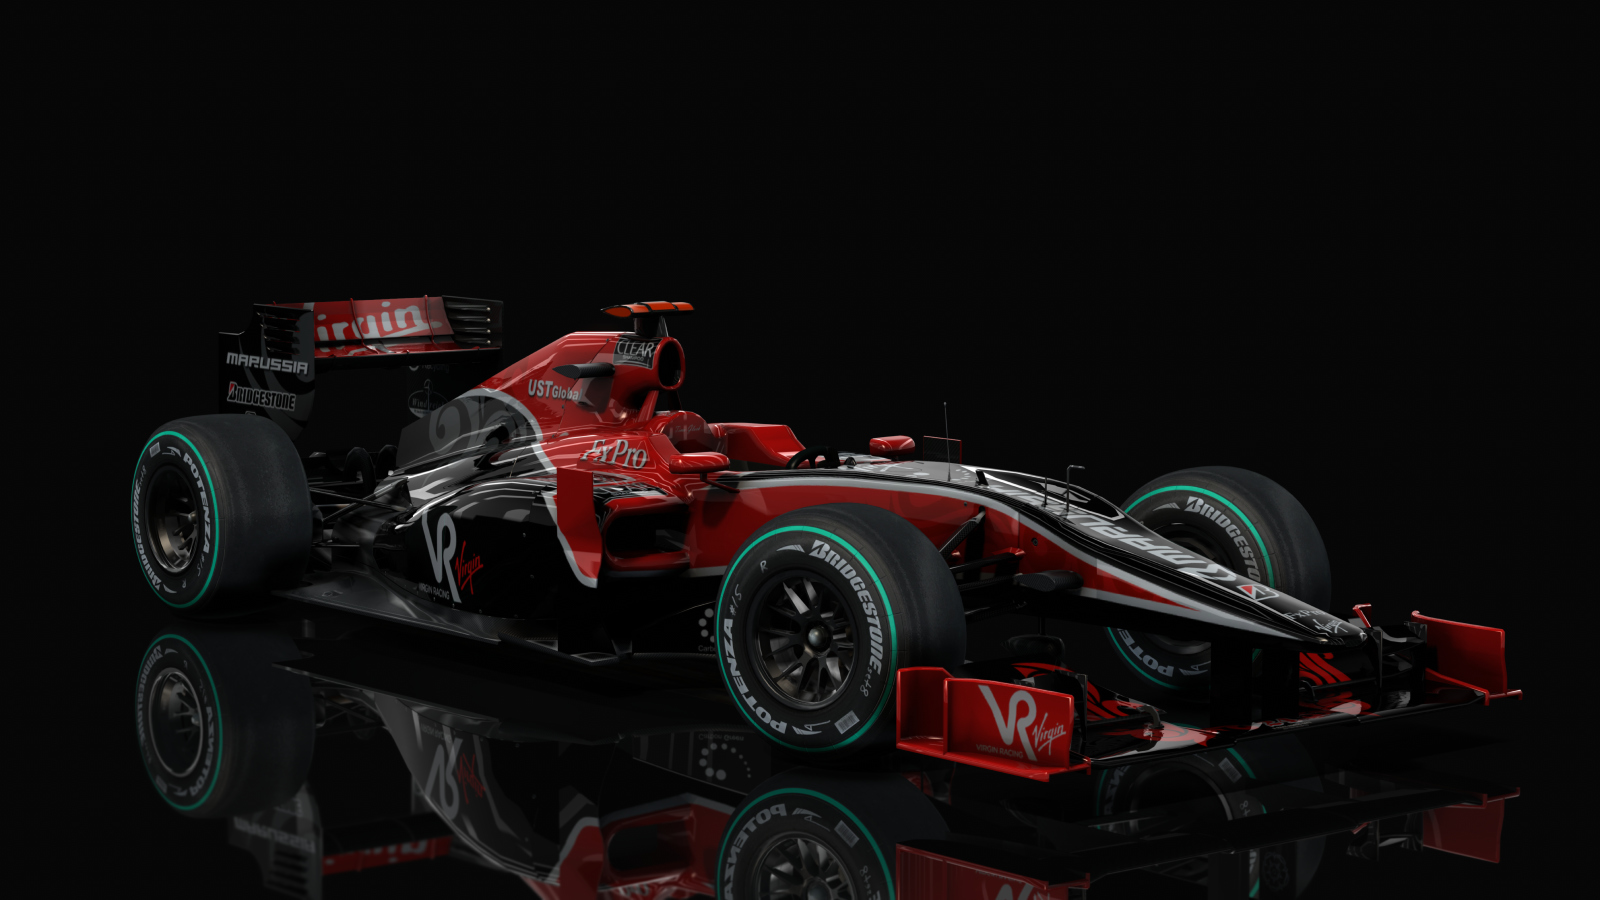 F1 2010 - Virgin VR-01, skin Glock